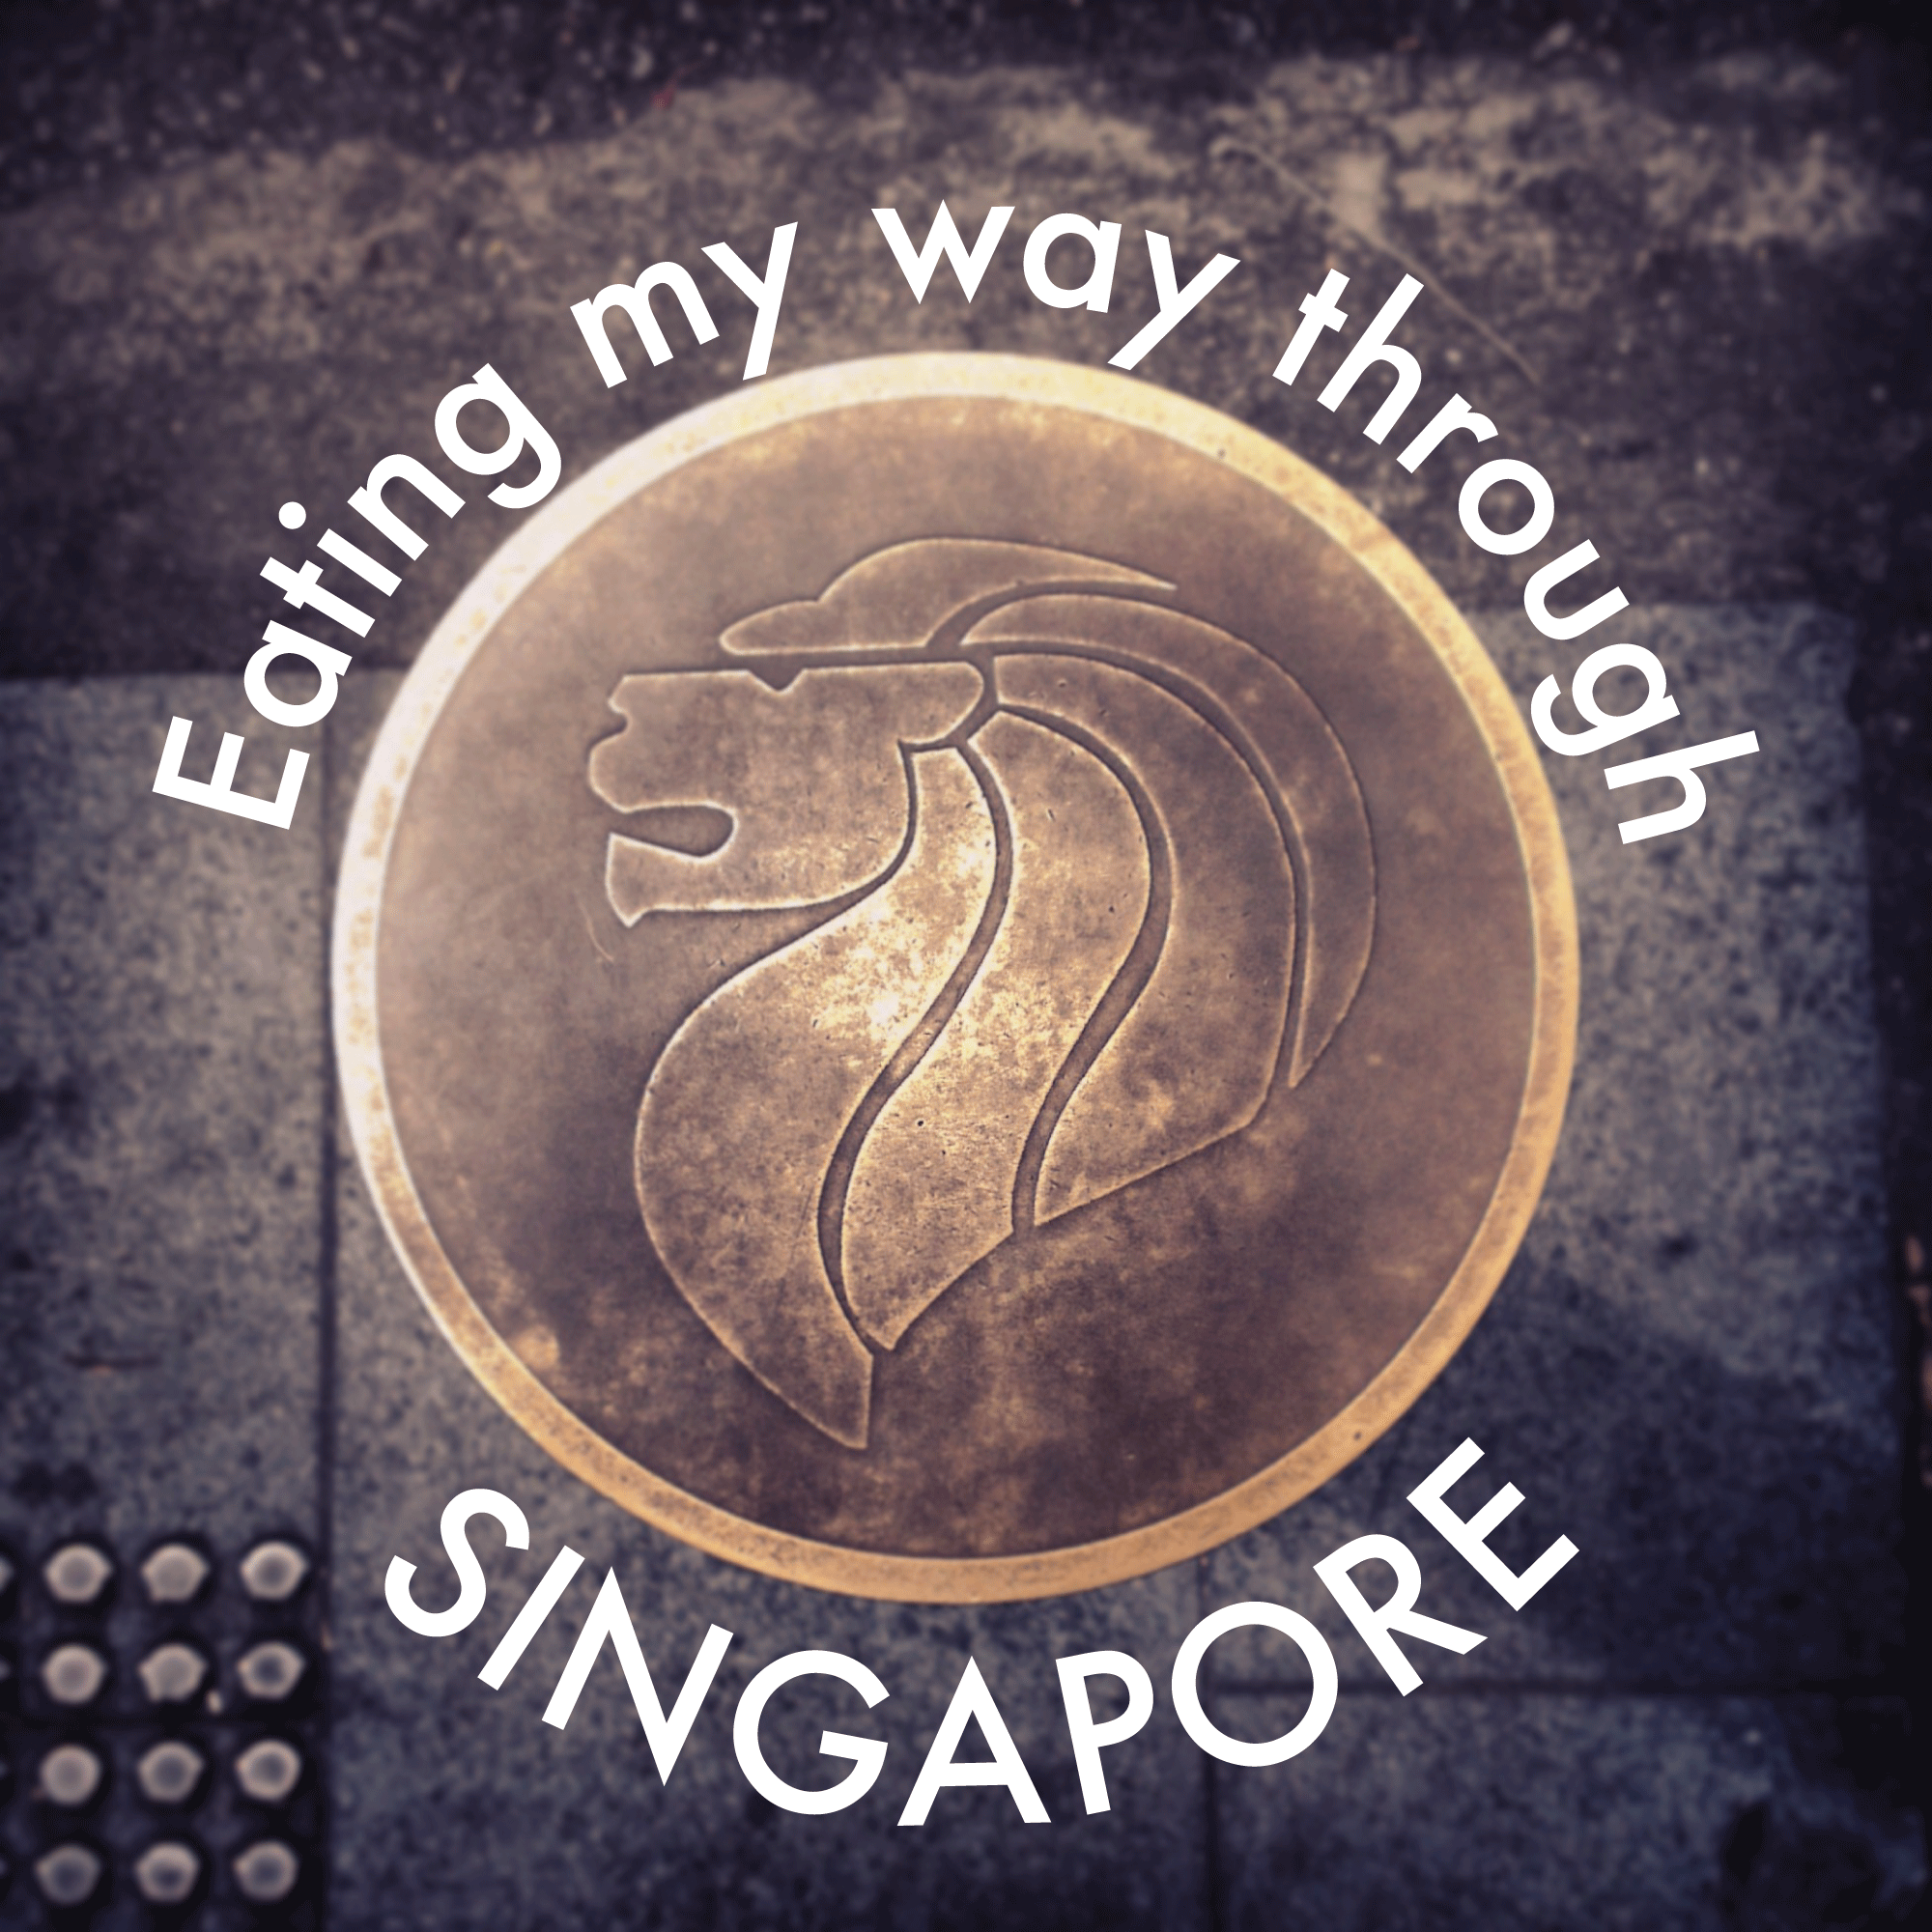 eating my way through singapore